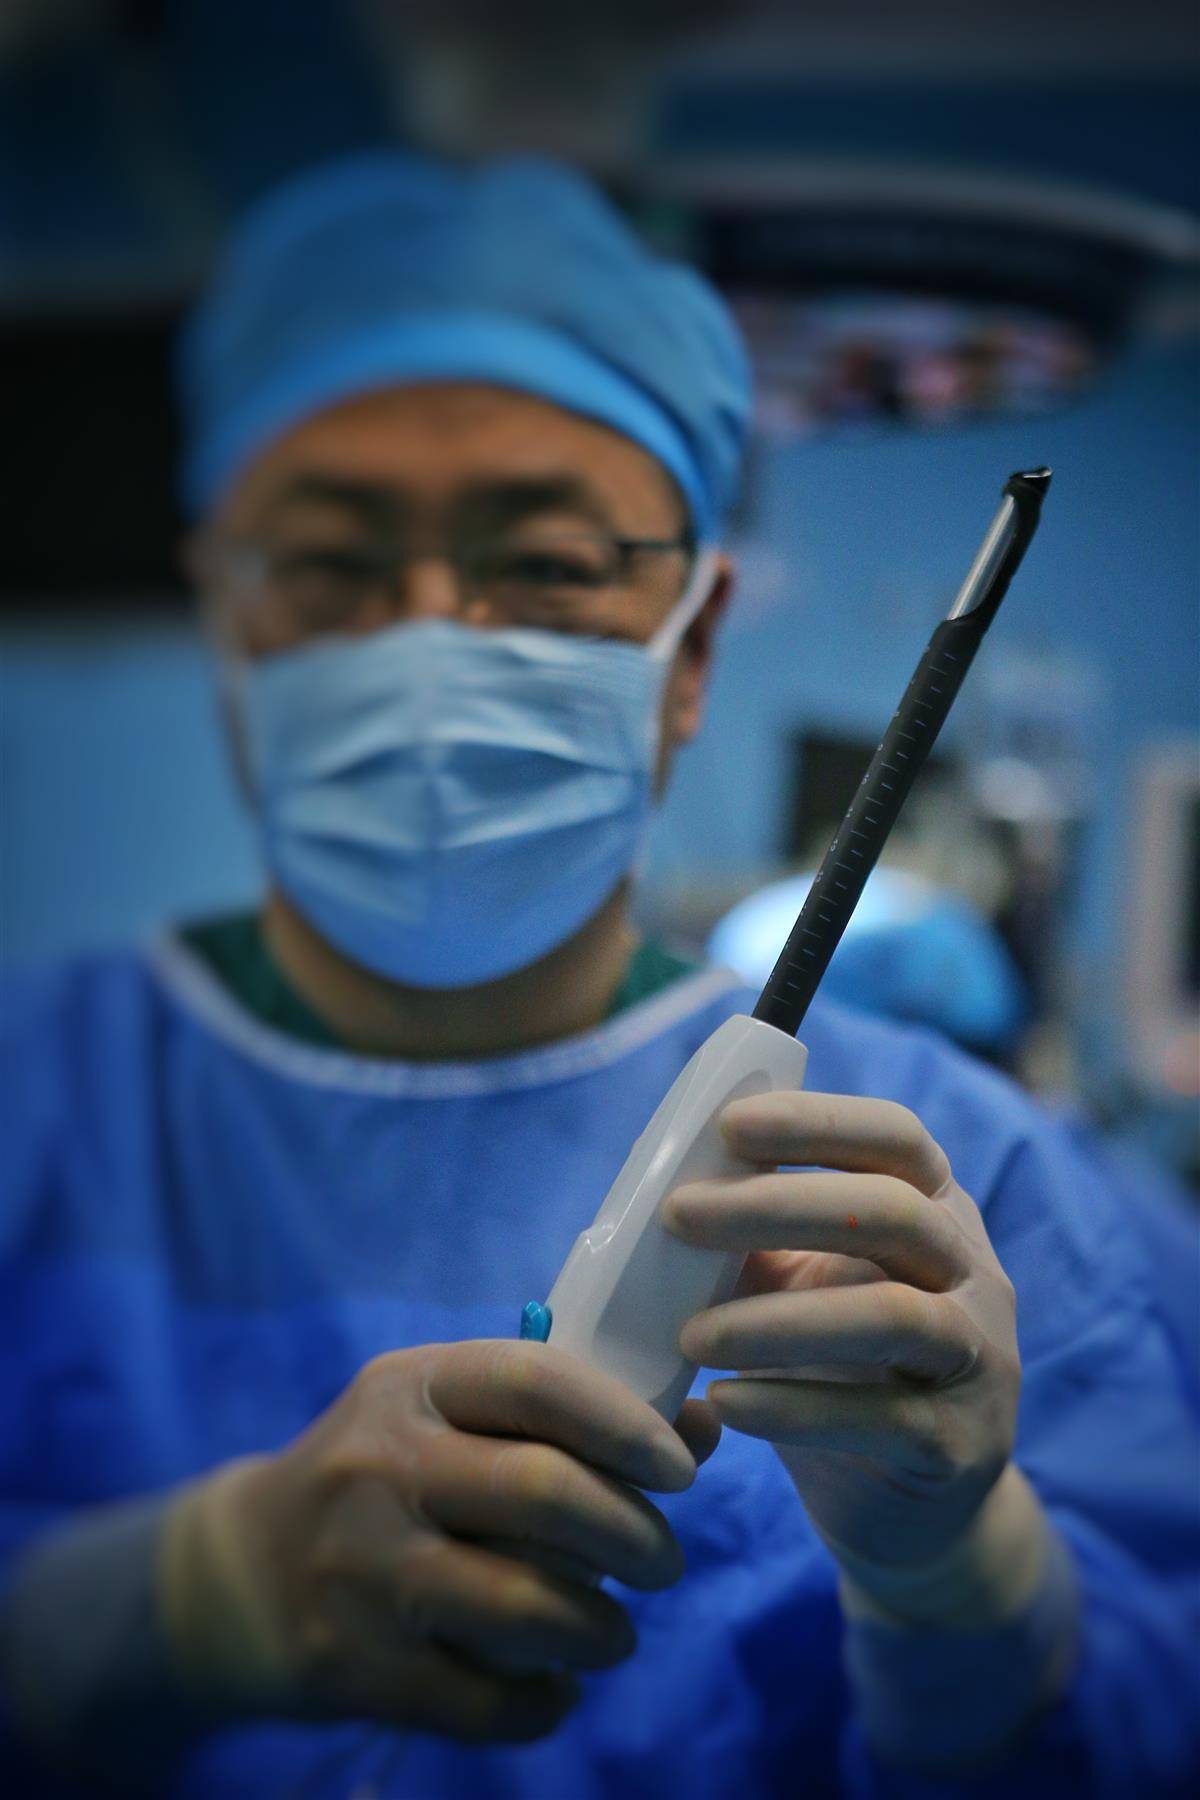 同濟醫院魏翔教授自主研發全球首創針對肥厚性梗阻性心肌病的心肌旋切器械和手術。（湖北日報資料圖）